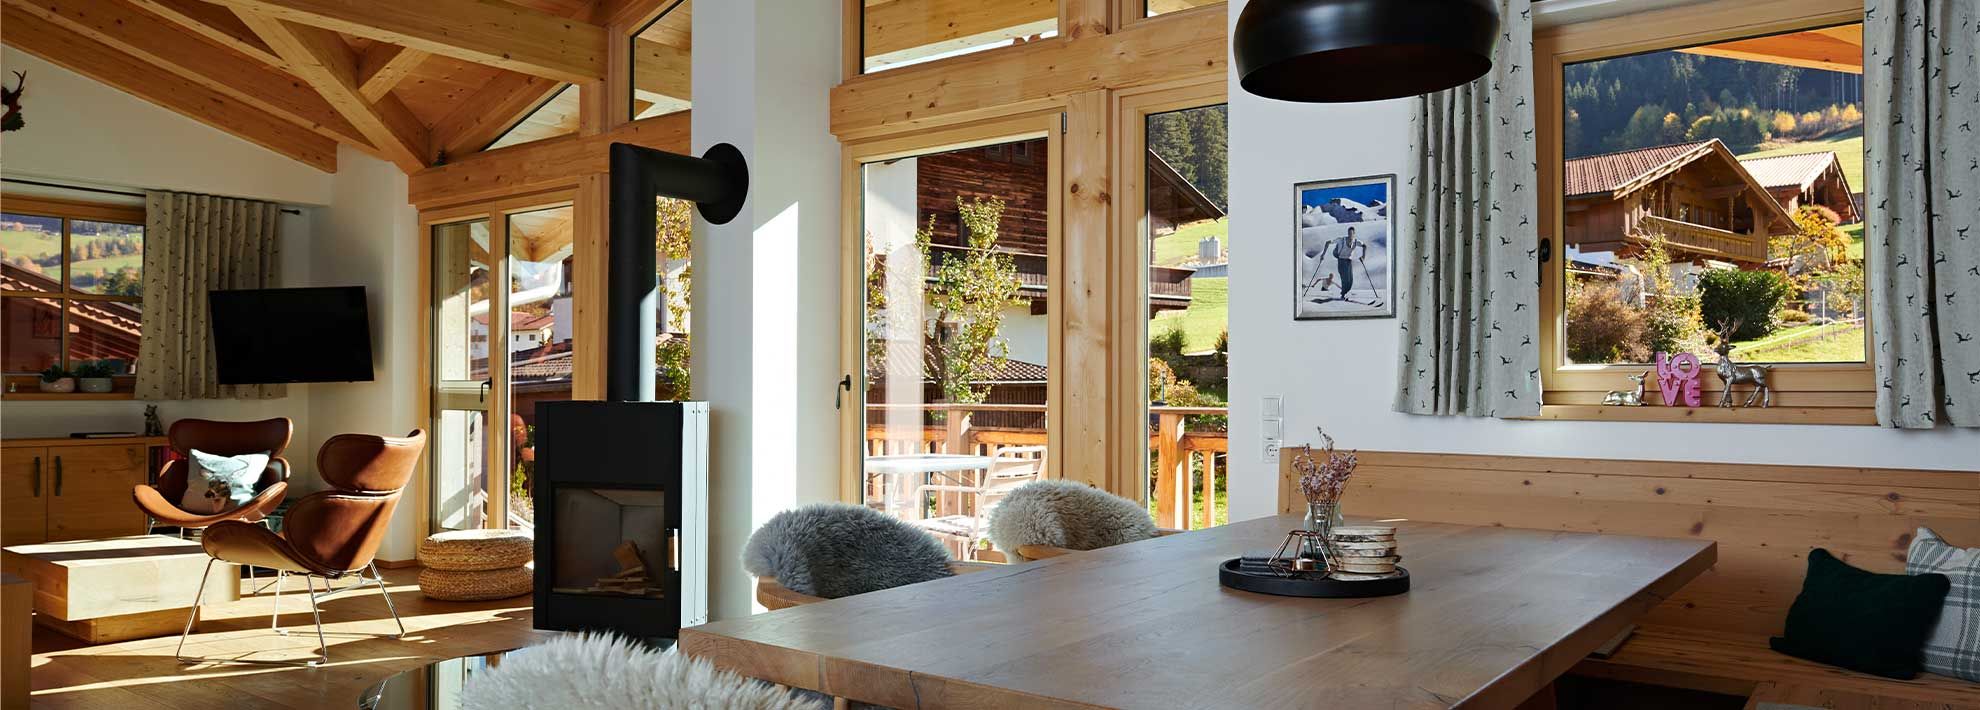 Chalet Matty im Alpbachtal - Alle unsere Zimmer sind Naturzimmer mit viel Holz zum Wohlfühlen und in modern-alpinem Design